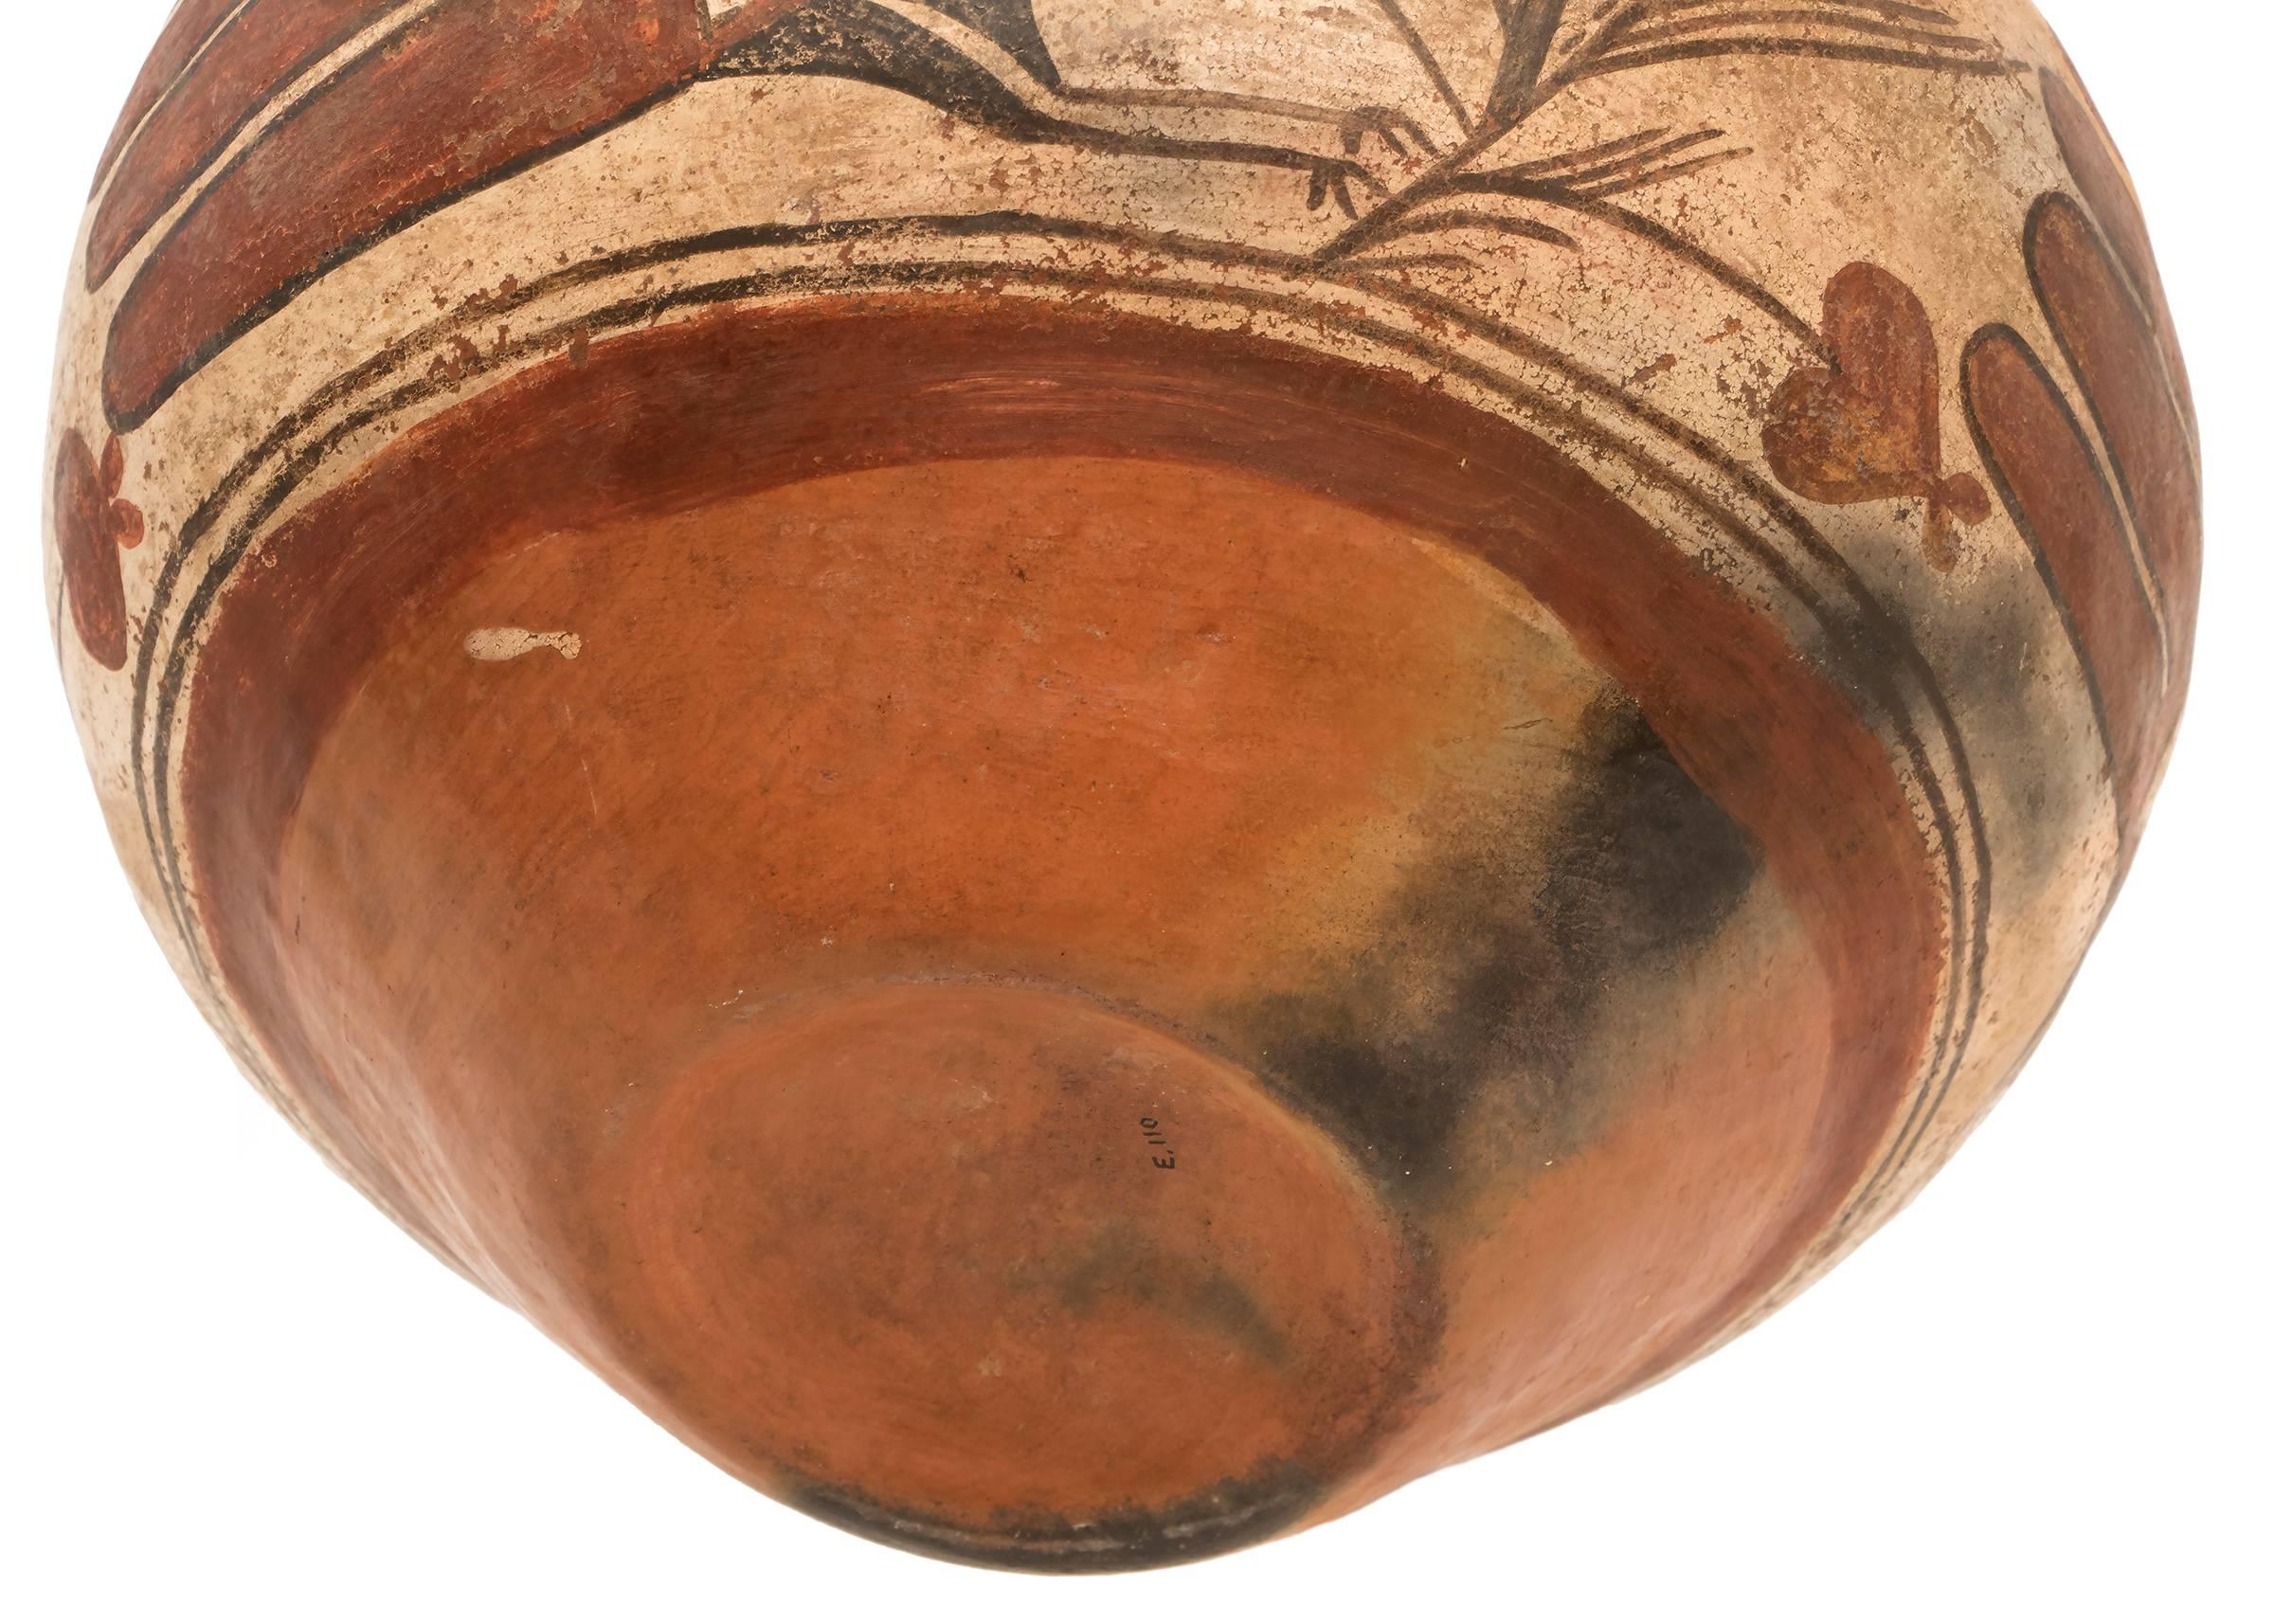 Earthenware Antique Native American Southwest Pottery Jar, Zia Pueblo, circa 1880